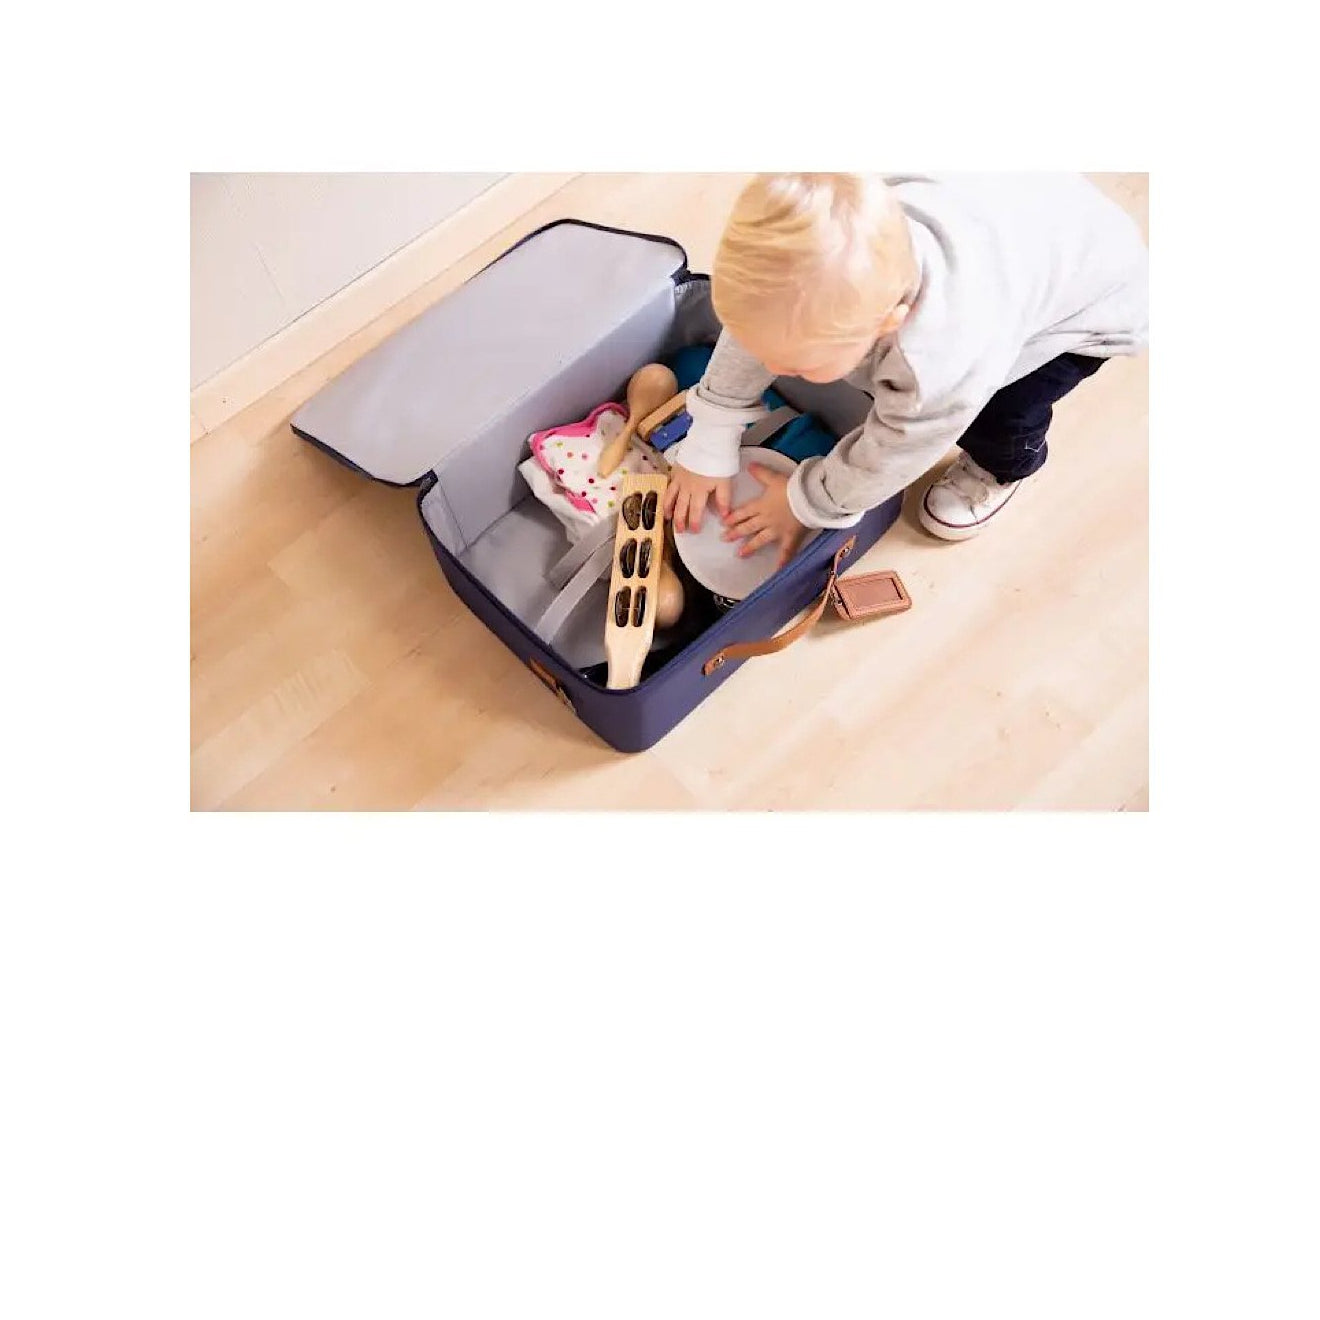 Mini Traveler Suitcase